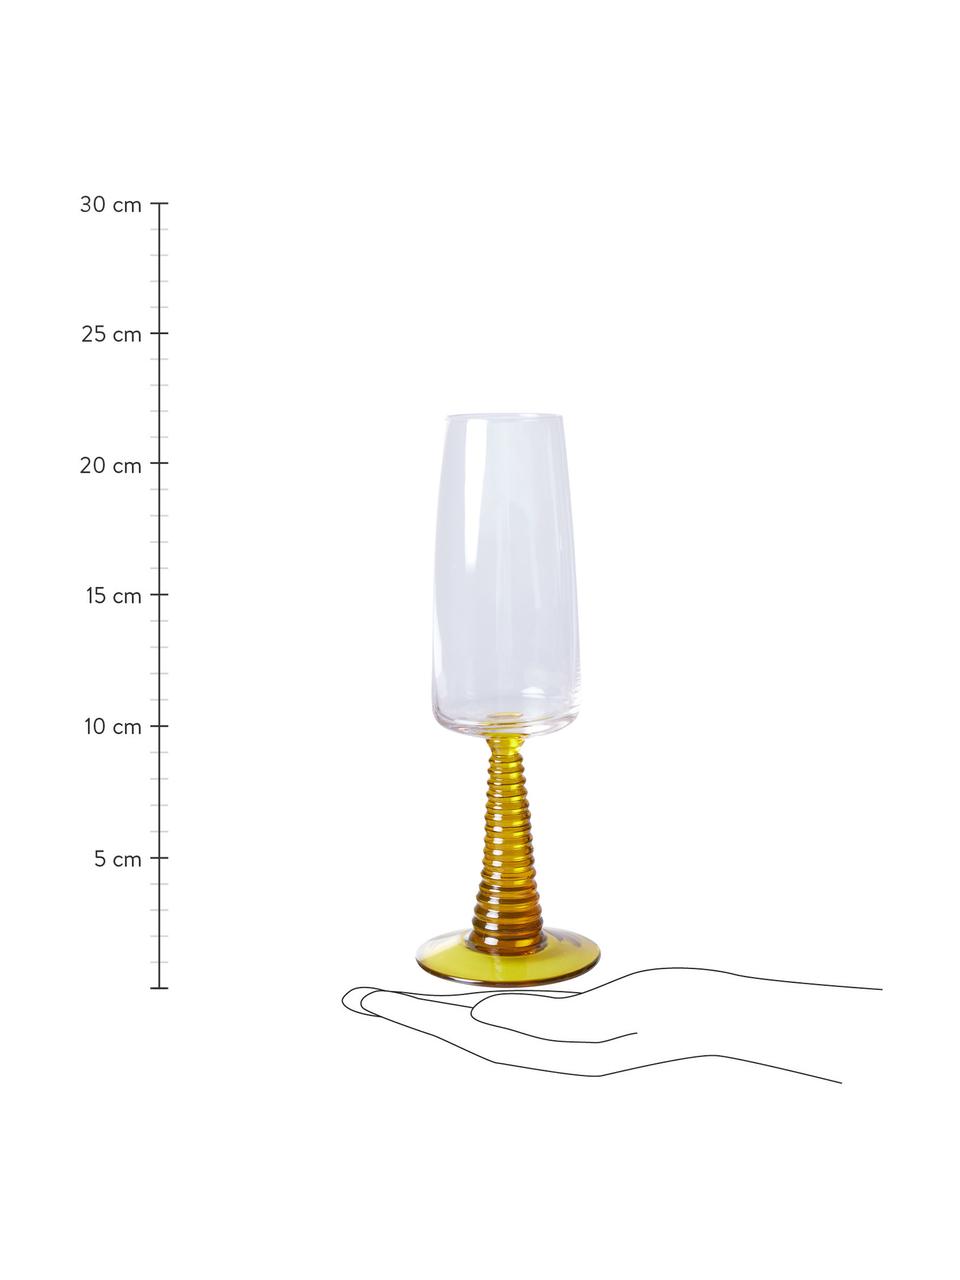 Sklenice na šampaňské Swirl, 2 ks, Sklo, Transparentní, žlutá, Ø 8 cm, V 22 cm, 290 ml